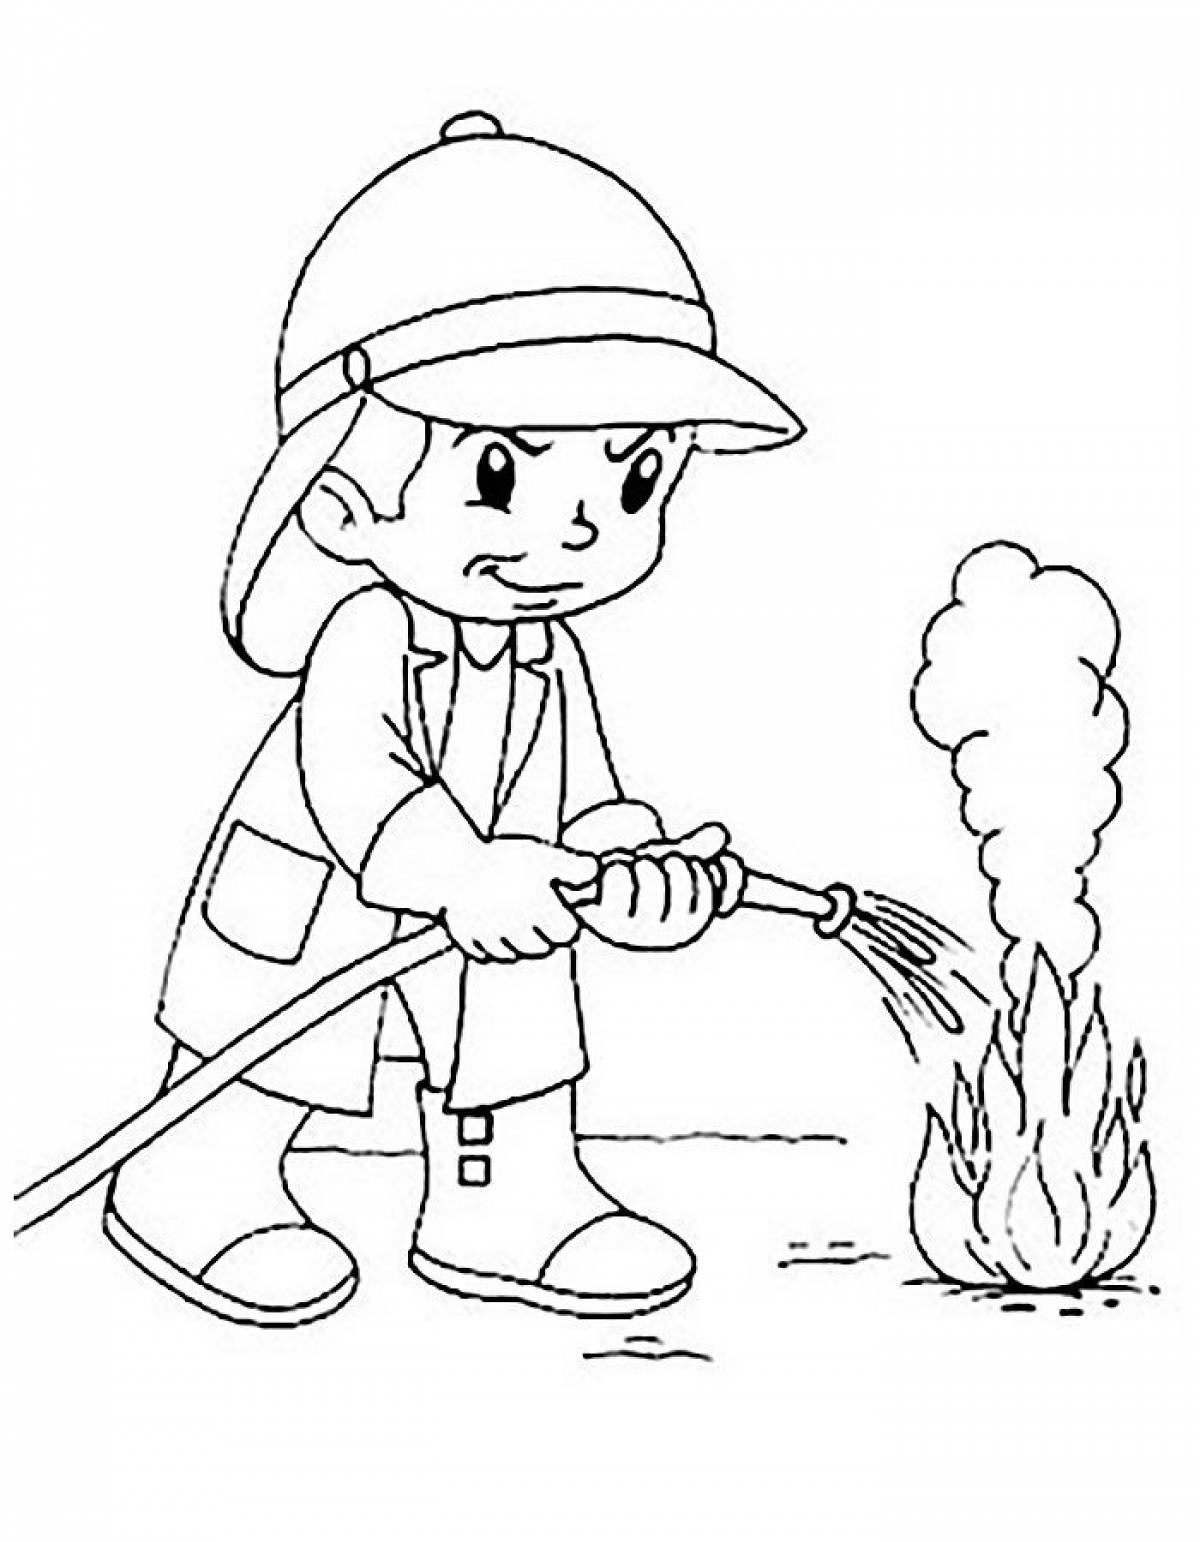 Детские рисунки на тему пожарной безопасности (30 картинок)